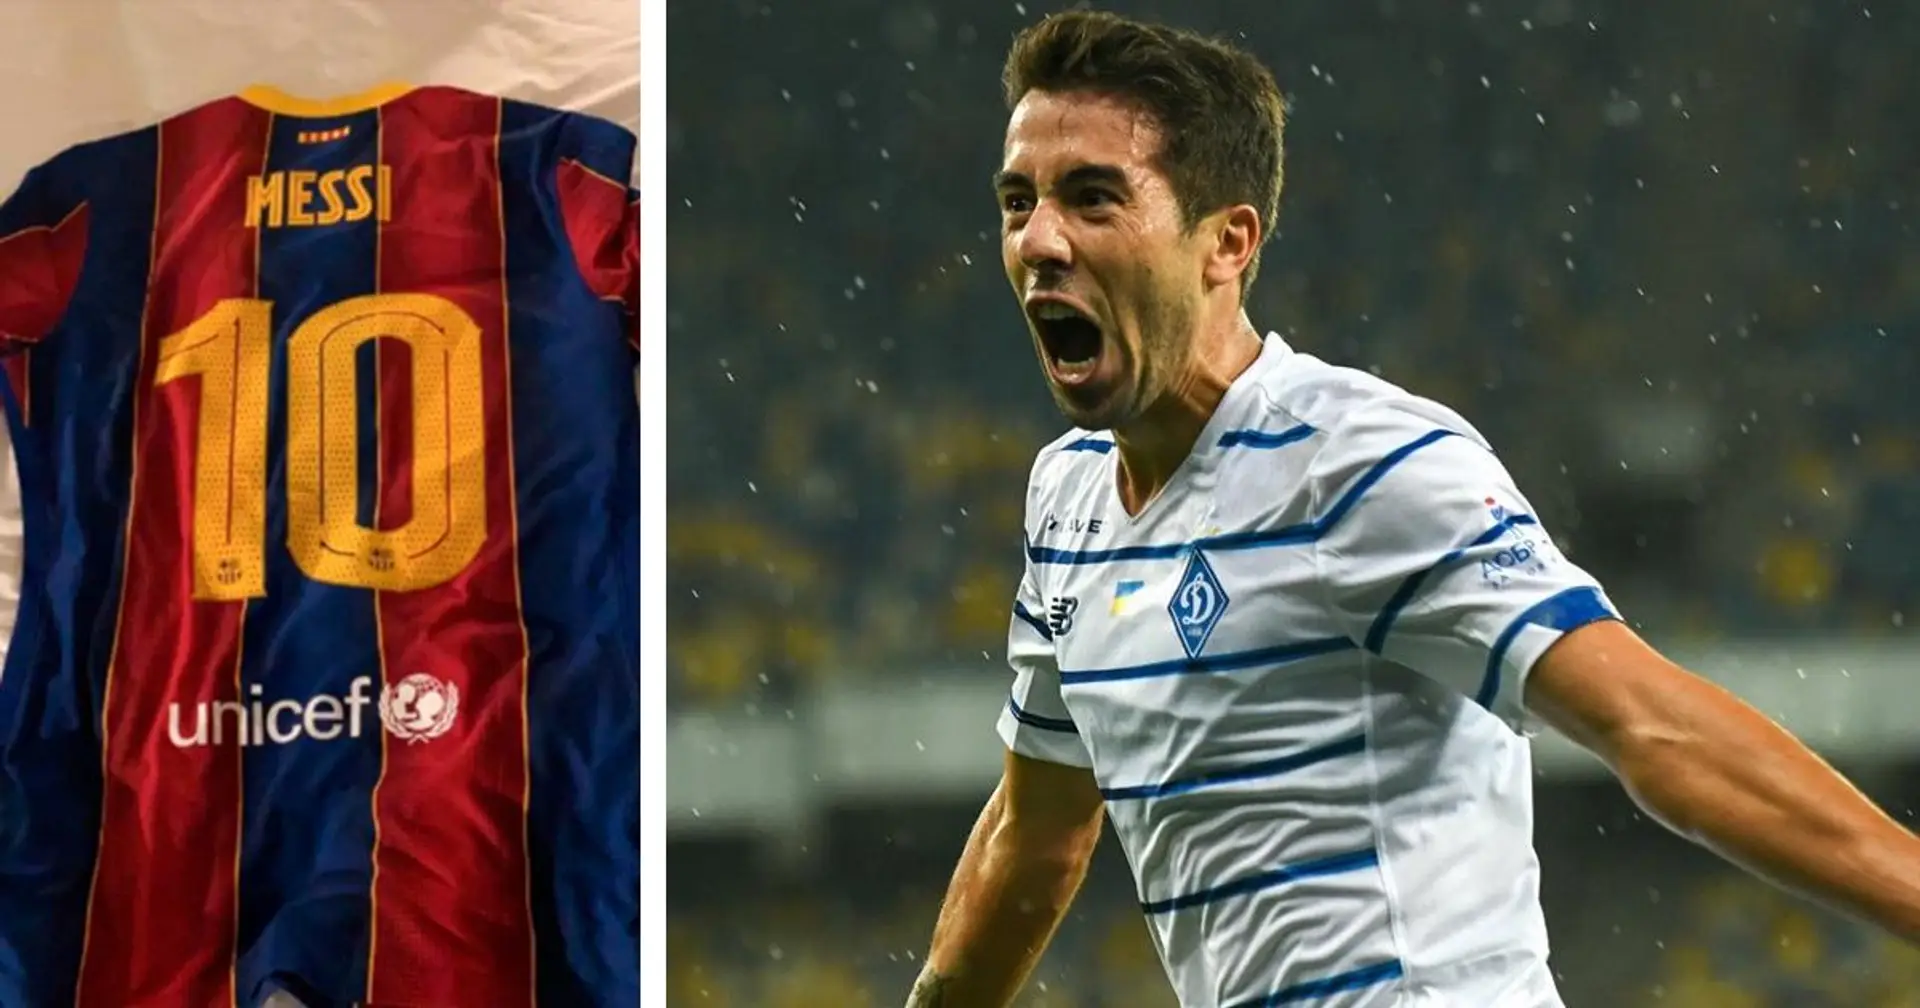 El delantero del Dynamo de Kiev, De Pena, revela cómo consiguió la camiseta de Messi a través de Luis Suárez